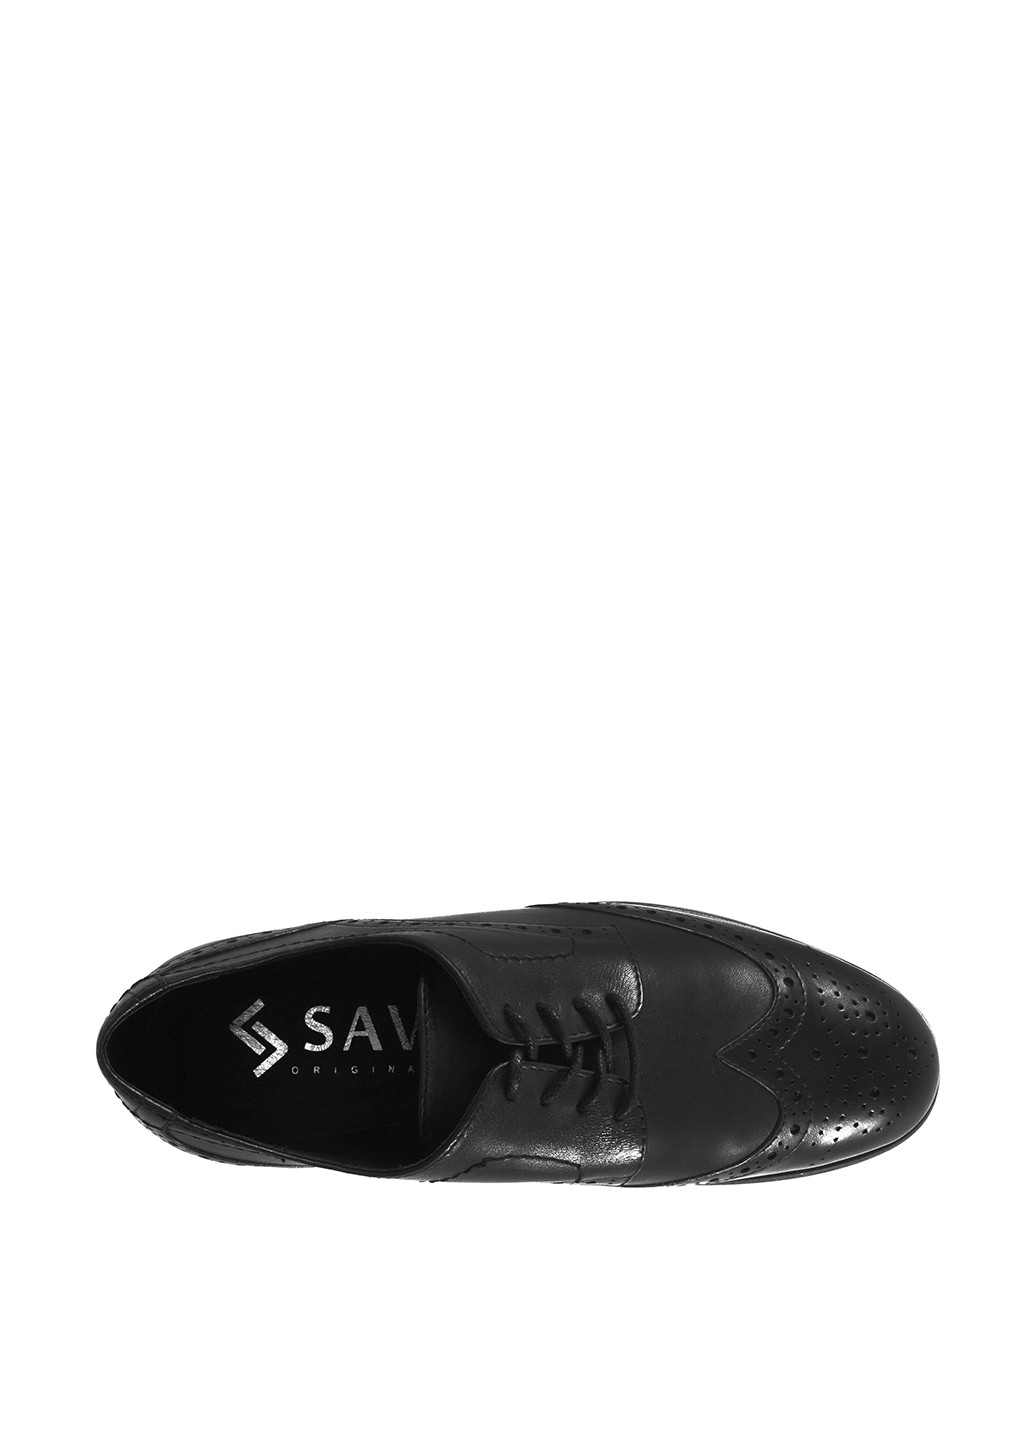 Черные классические туфли Sav на шнурках